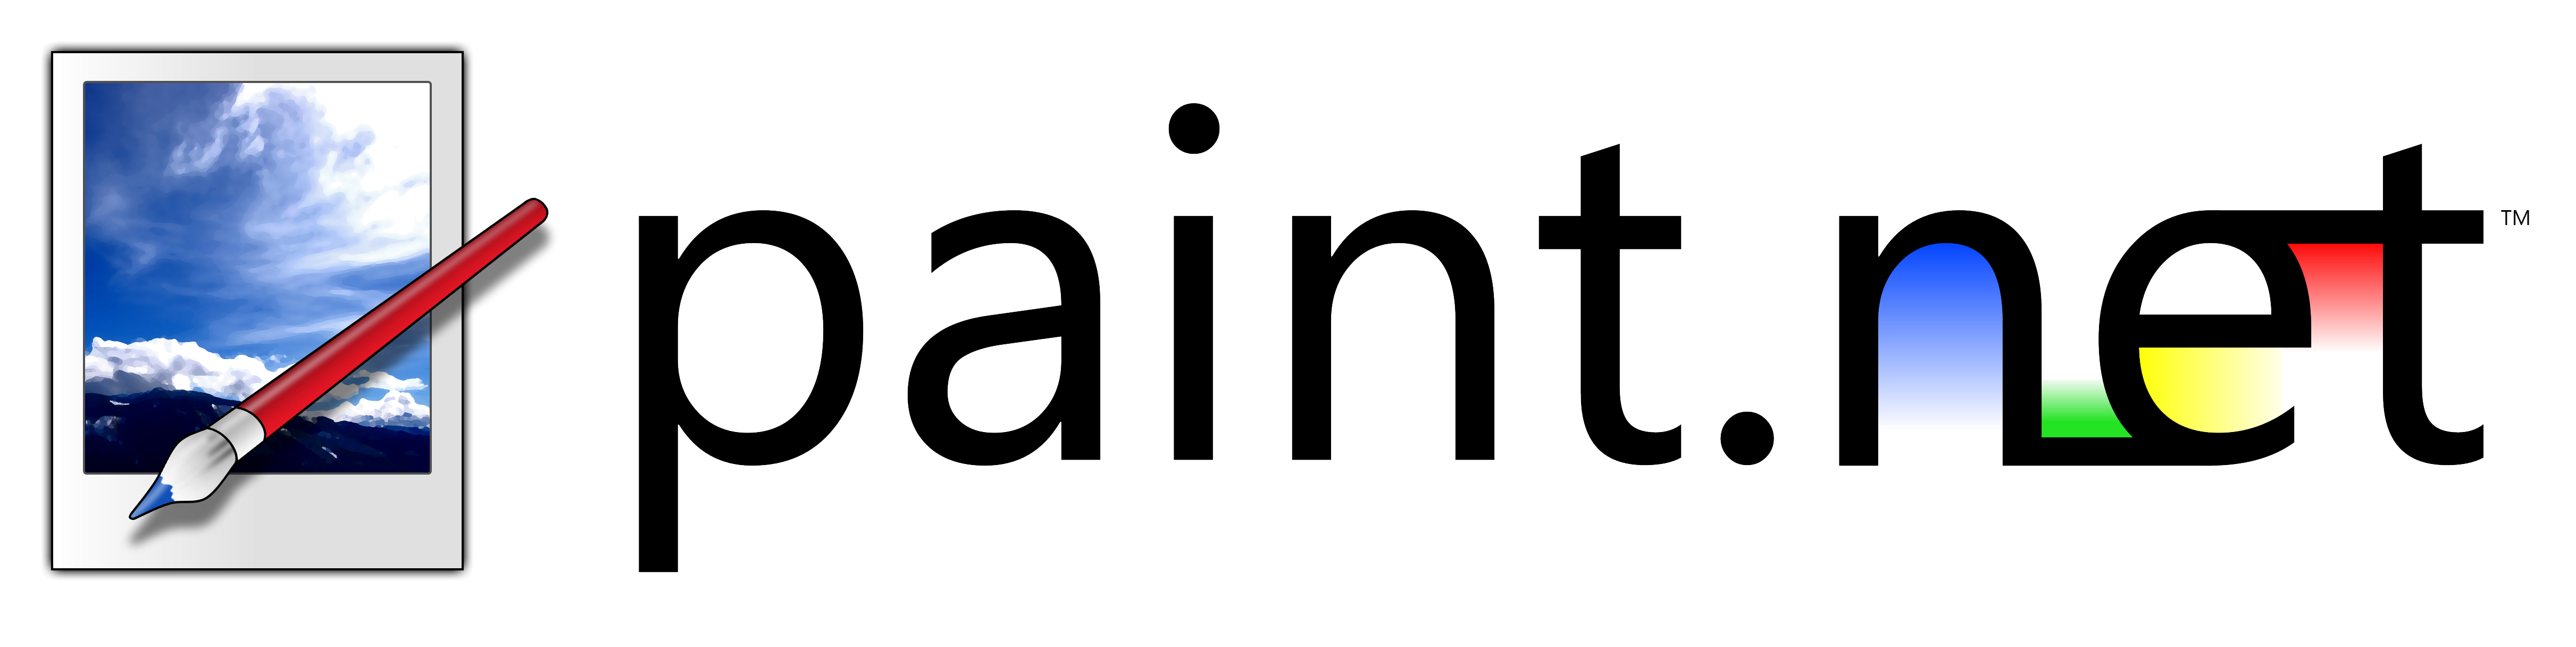 Muzyet net. Paint.net. Paint.net логотип. Паинт нет. Pain net на прозрачном фоне.